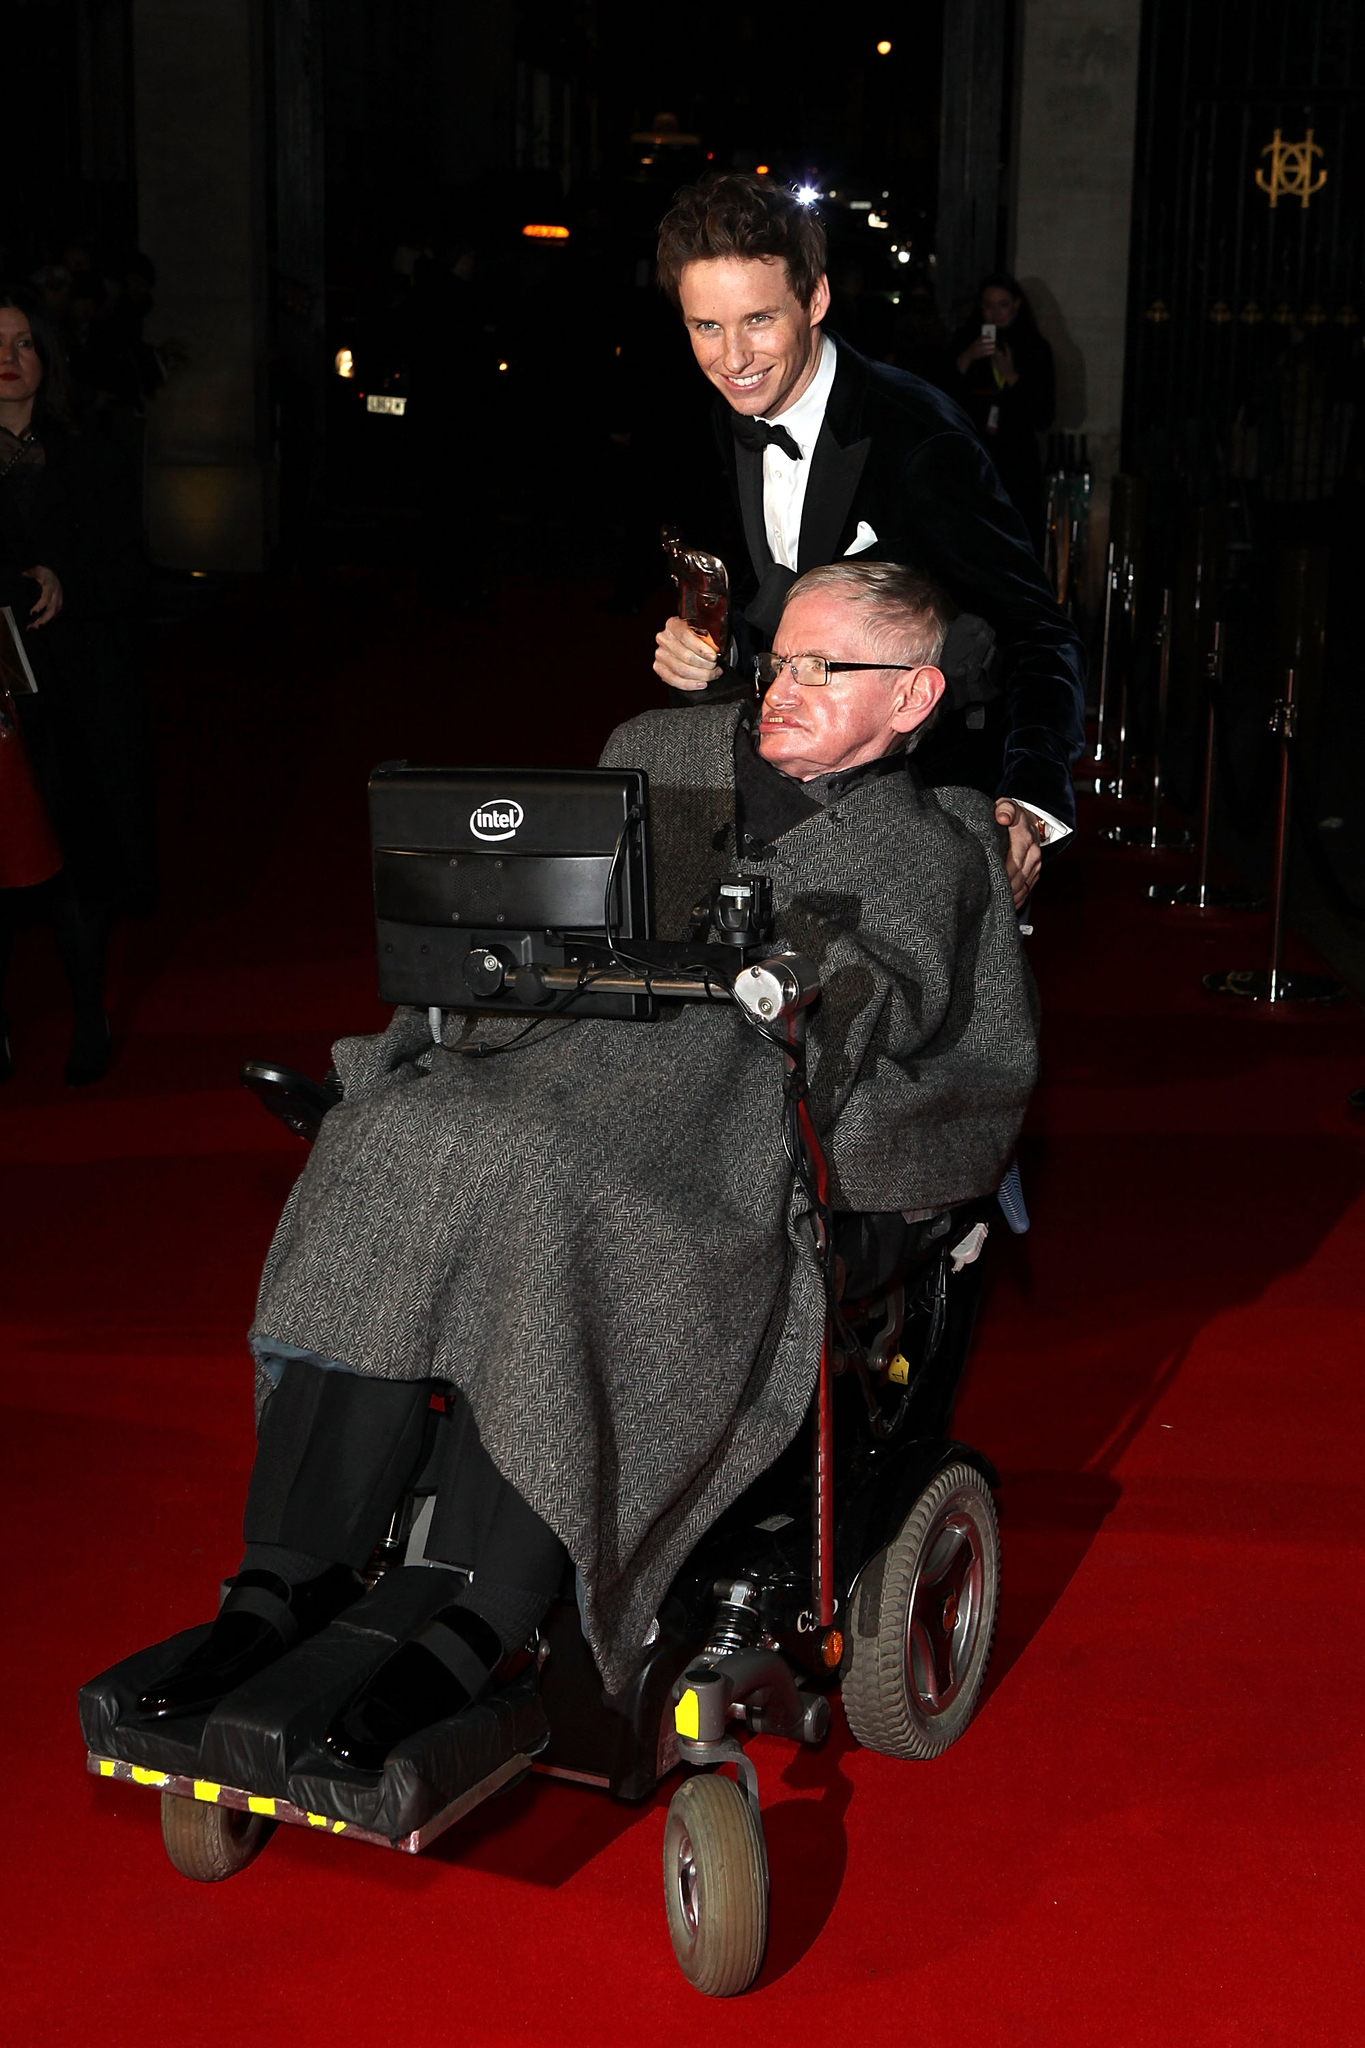 Stephen Hawking and Eddie Redmayne